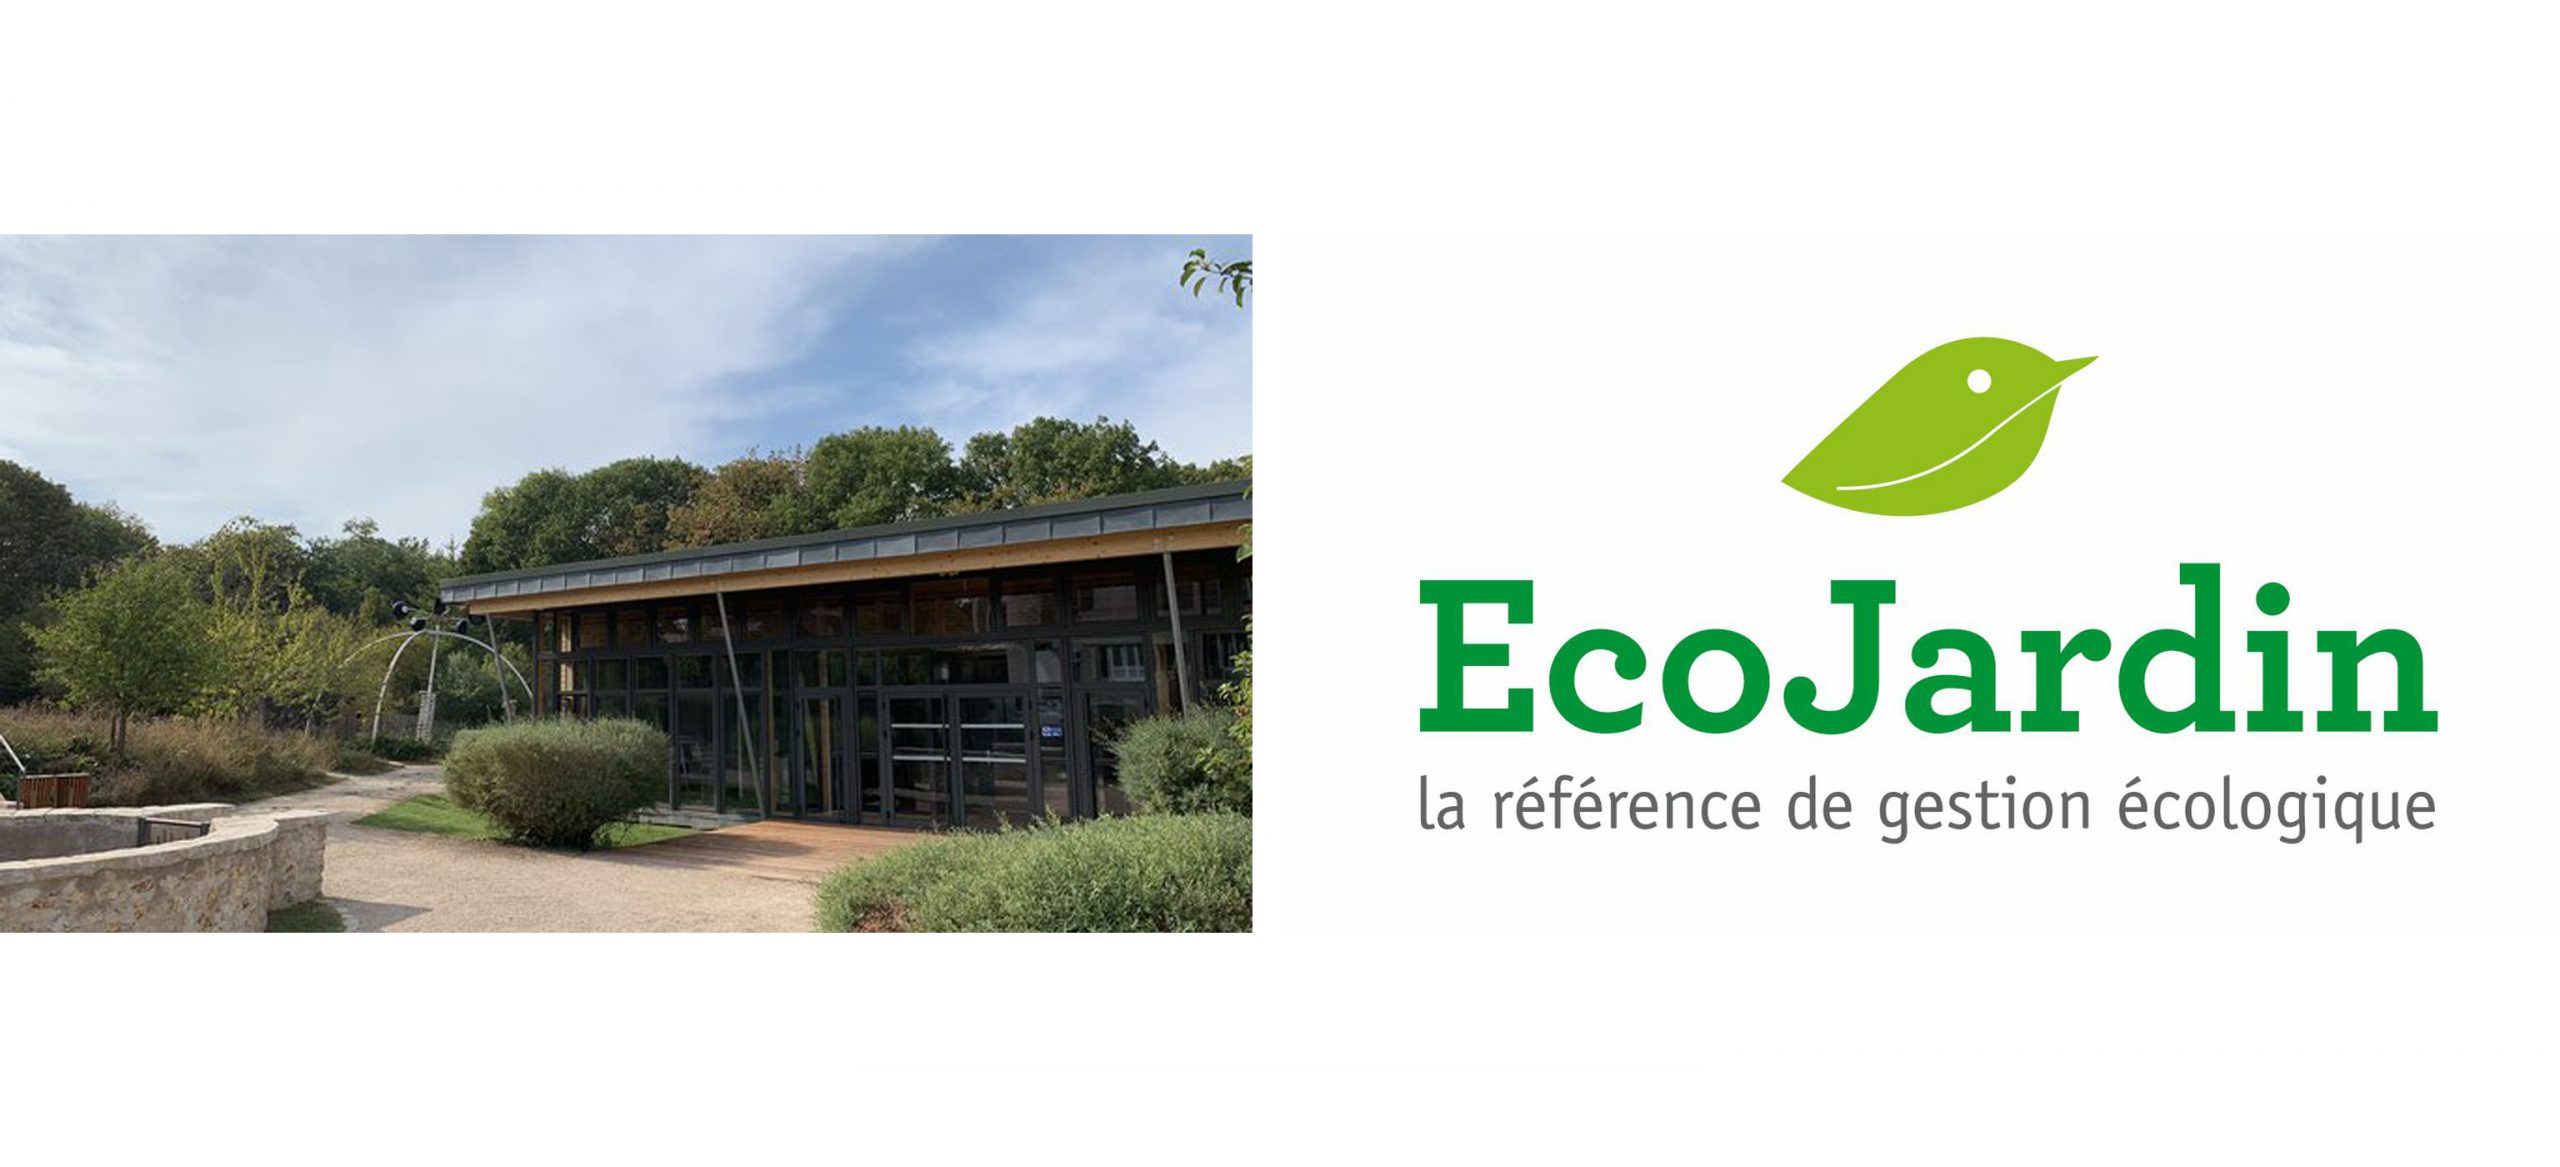 La Maison de l'Agglomération obtient le label EcoJardin 2020  !